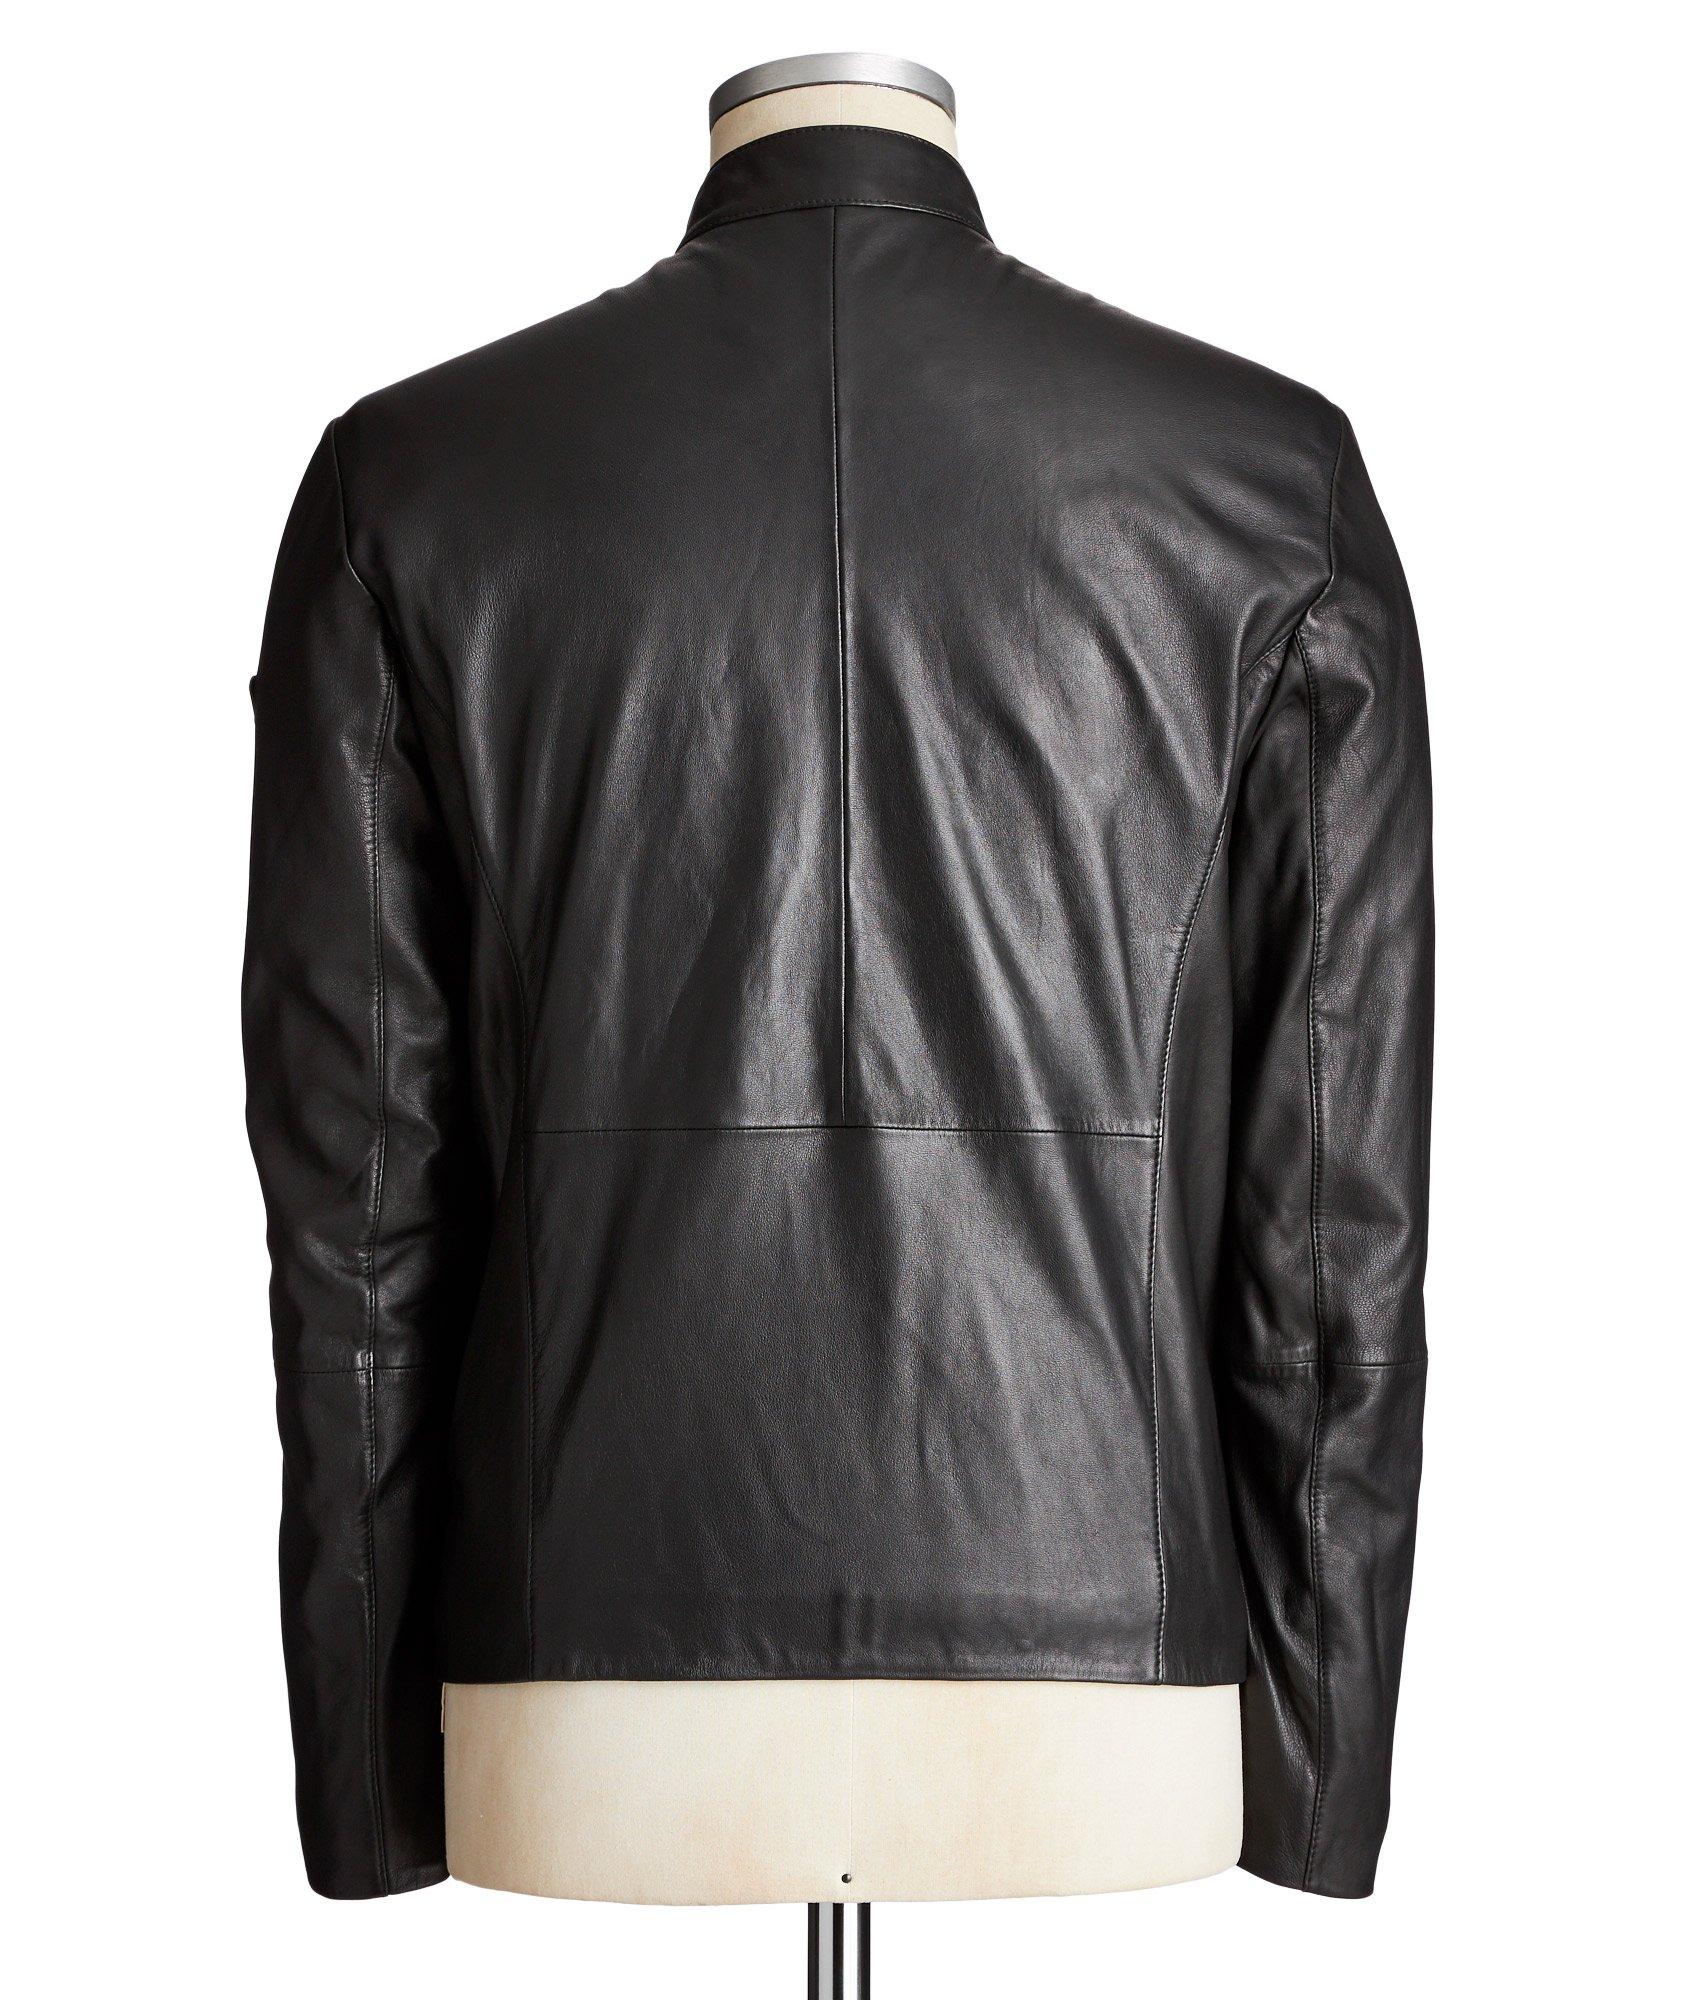 Leather Jacket image 1